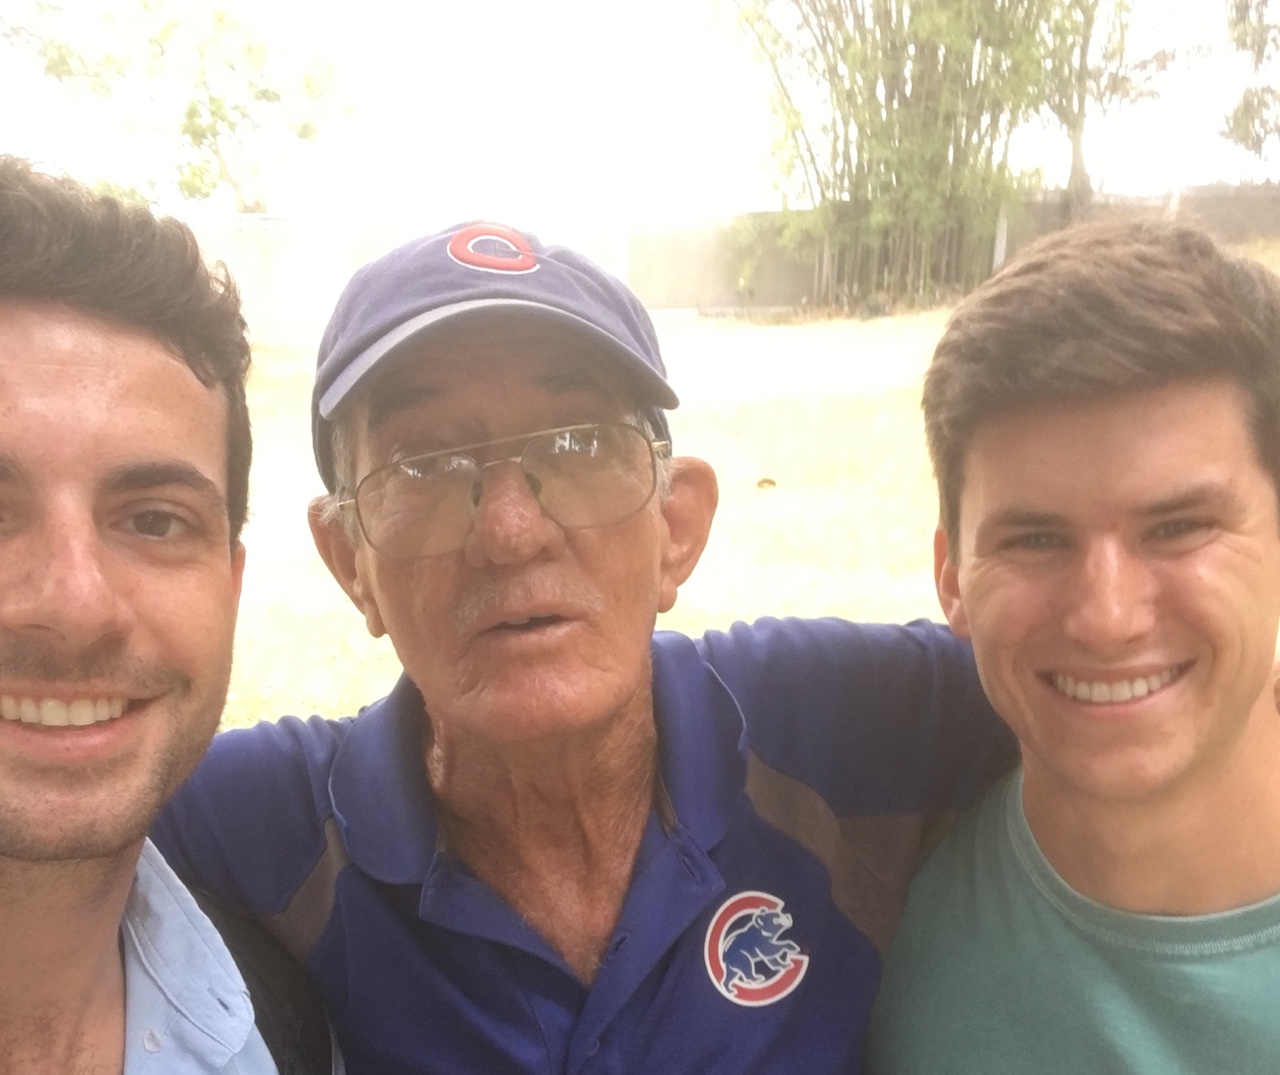 Cubs fan in Cuba by Morgan Bernard